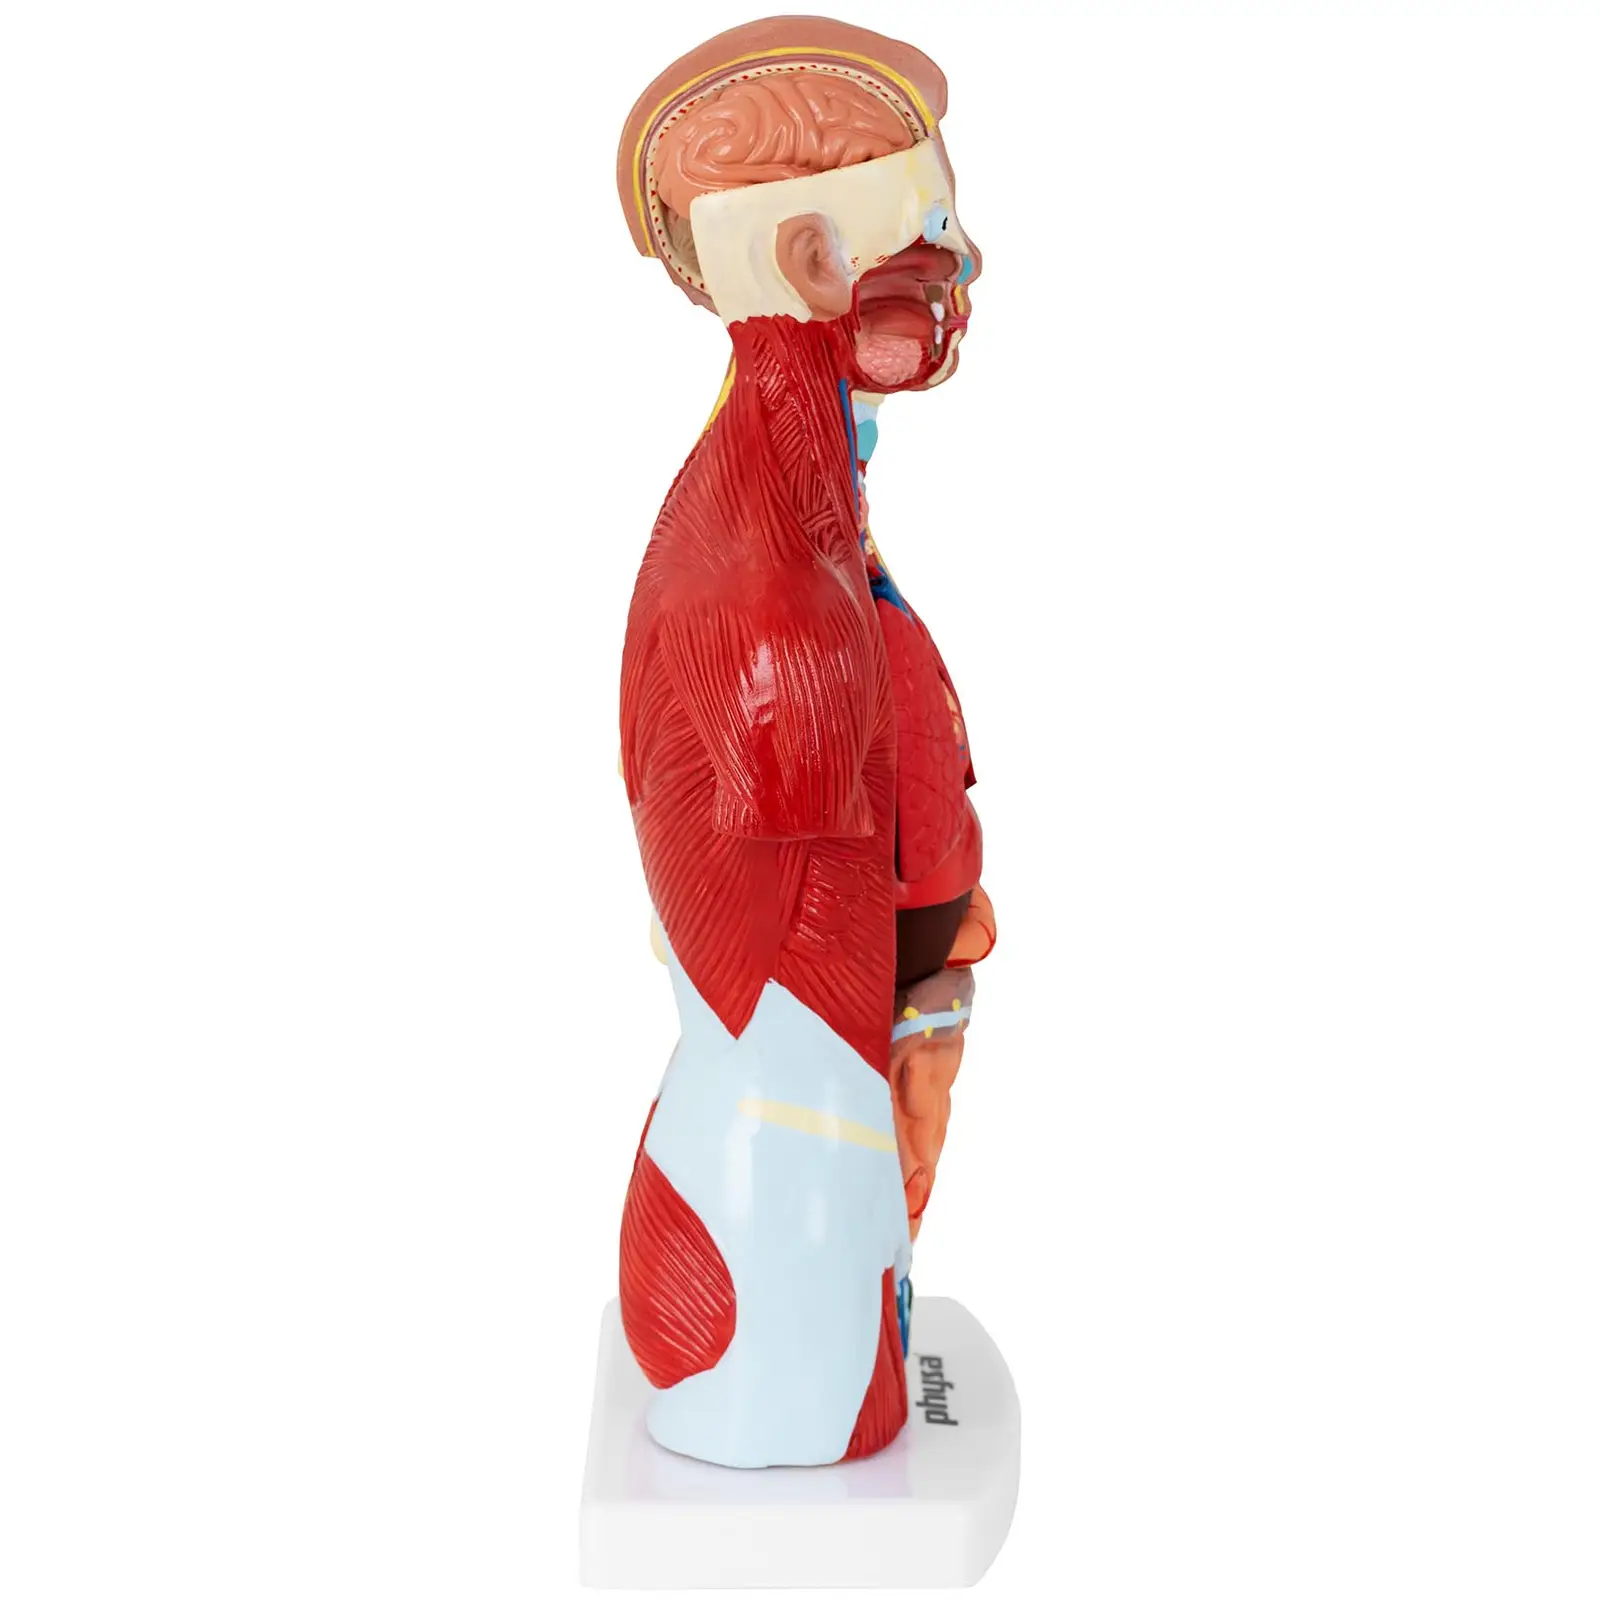 Tułów człowieka - model anatomiczny